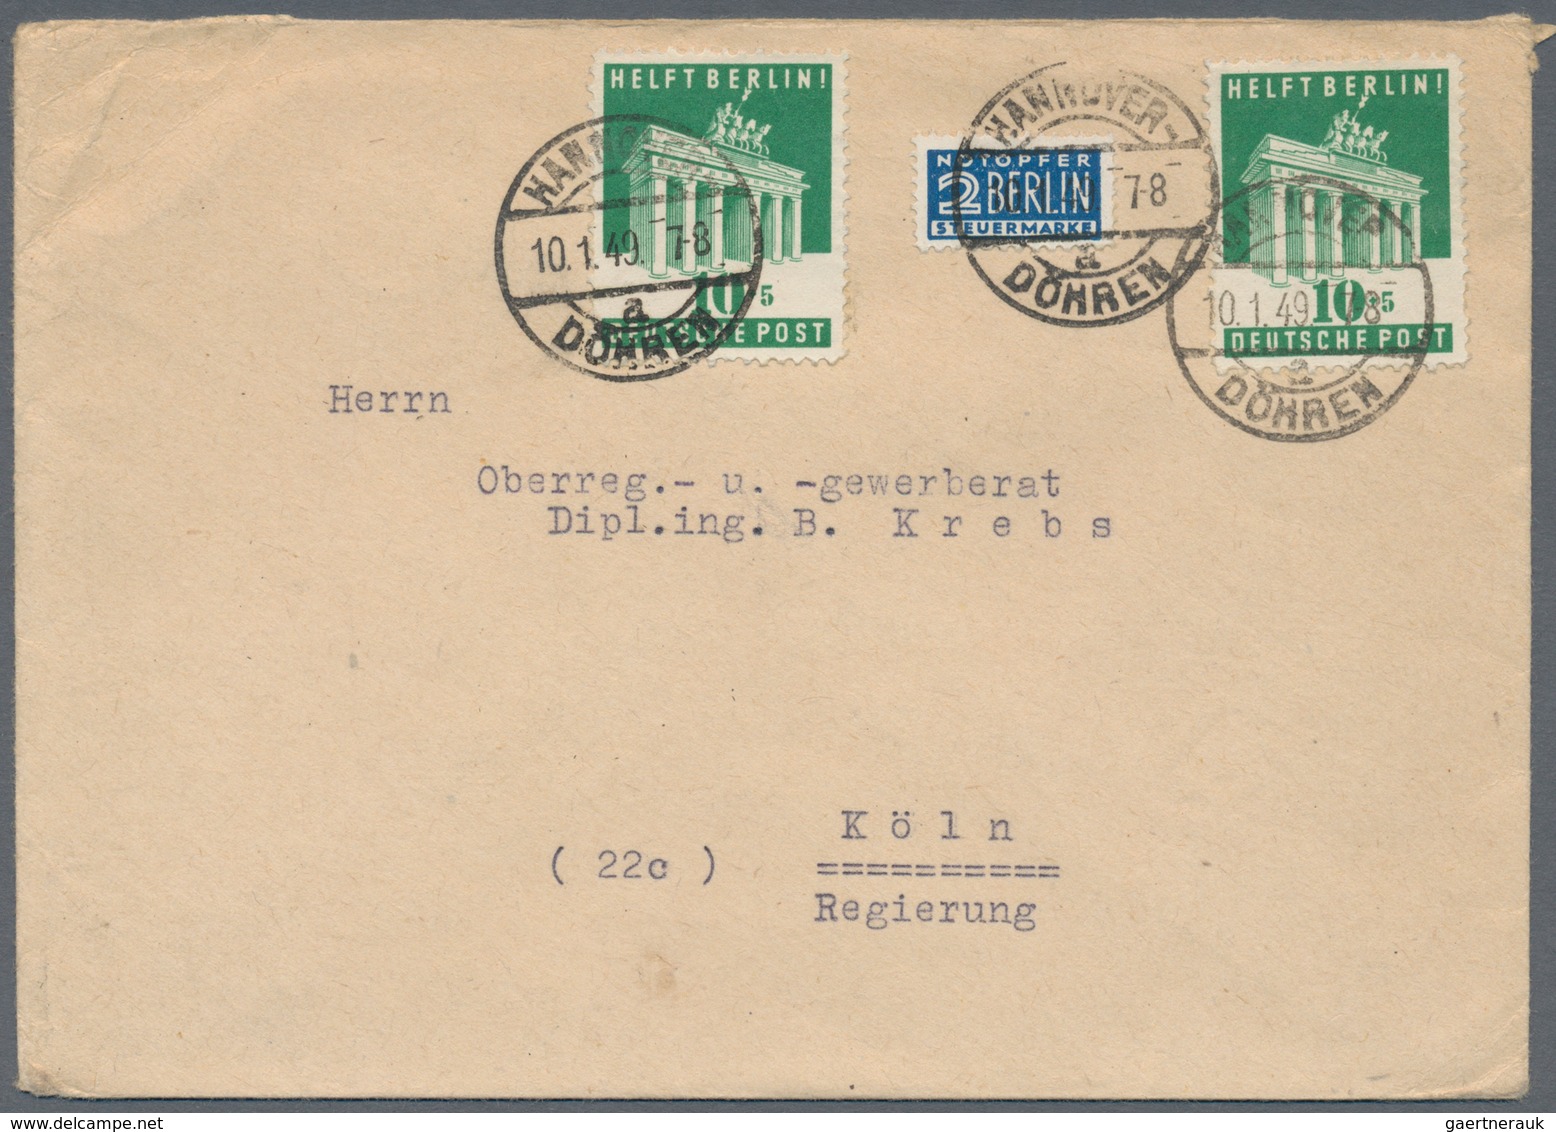 Bizone: 1948/1953, vielseitiger Bestand von über 600 Bedarfs-Briefen/Karten mit Frankaturen Band/Net